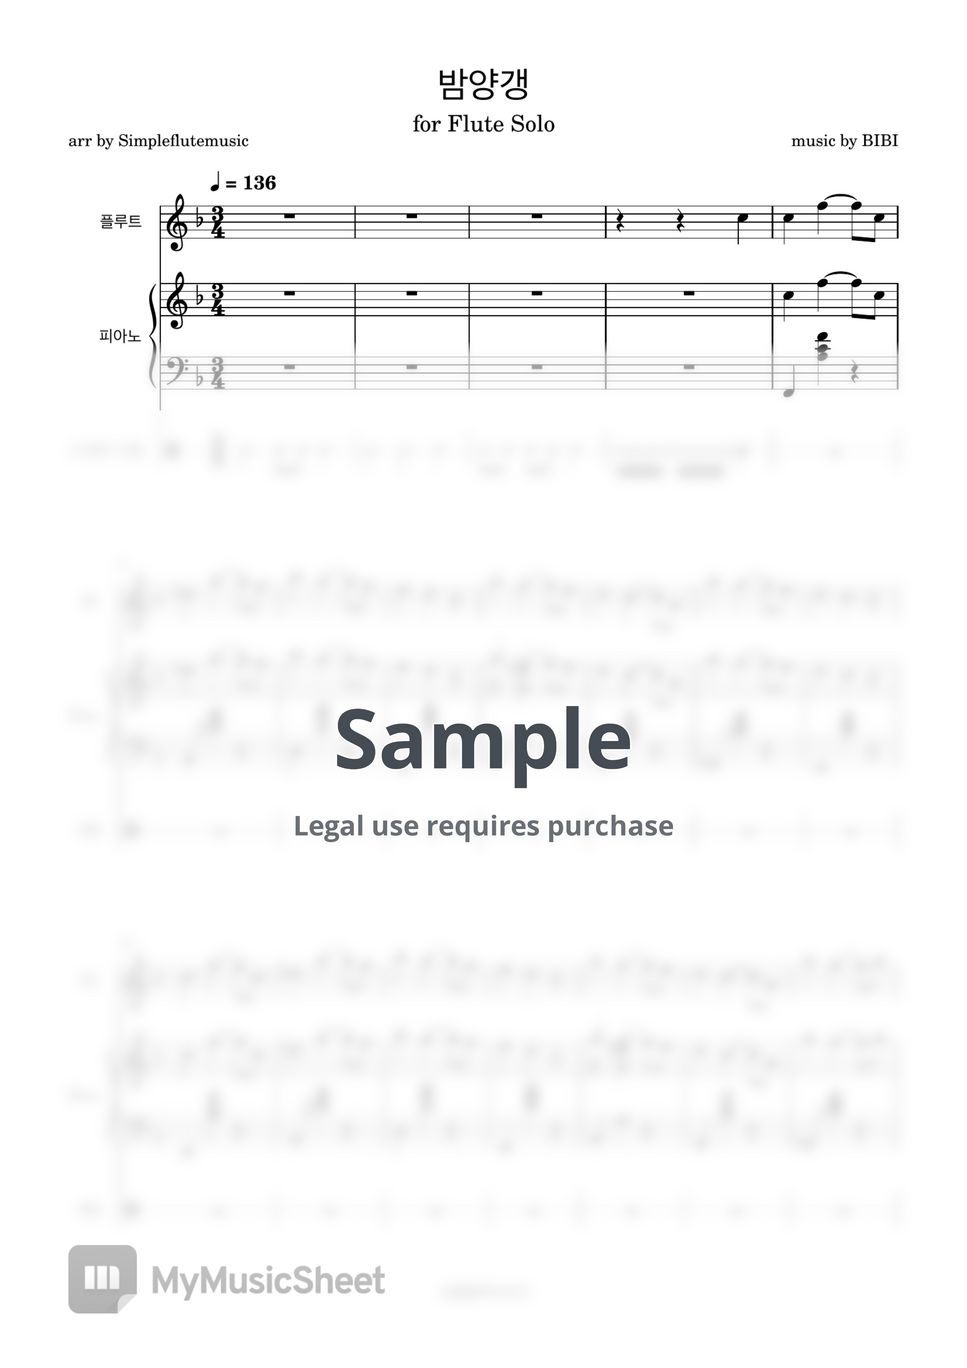 비비 - 밤양갱 (Flute/Piano/Drum and MR) by 심플플루트뮤직